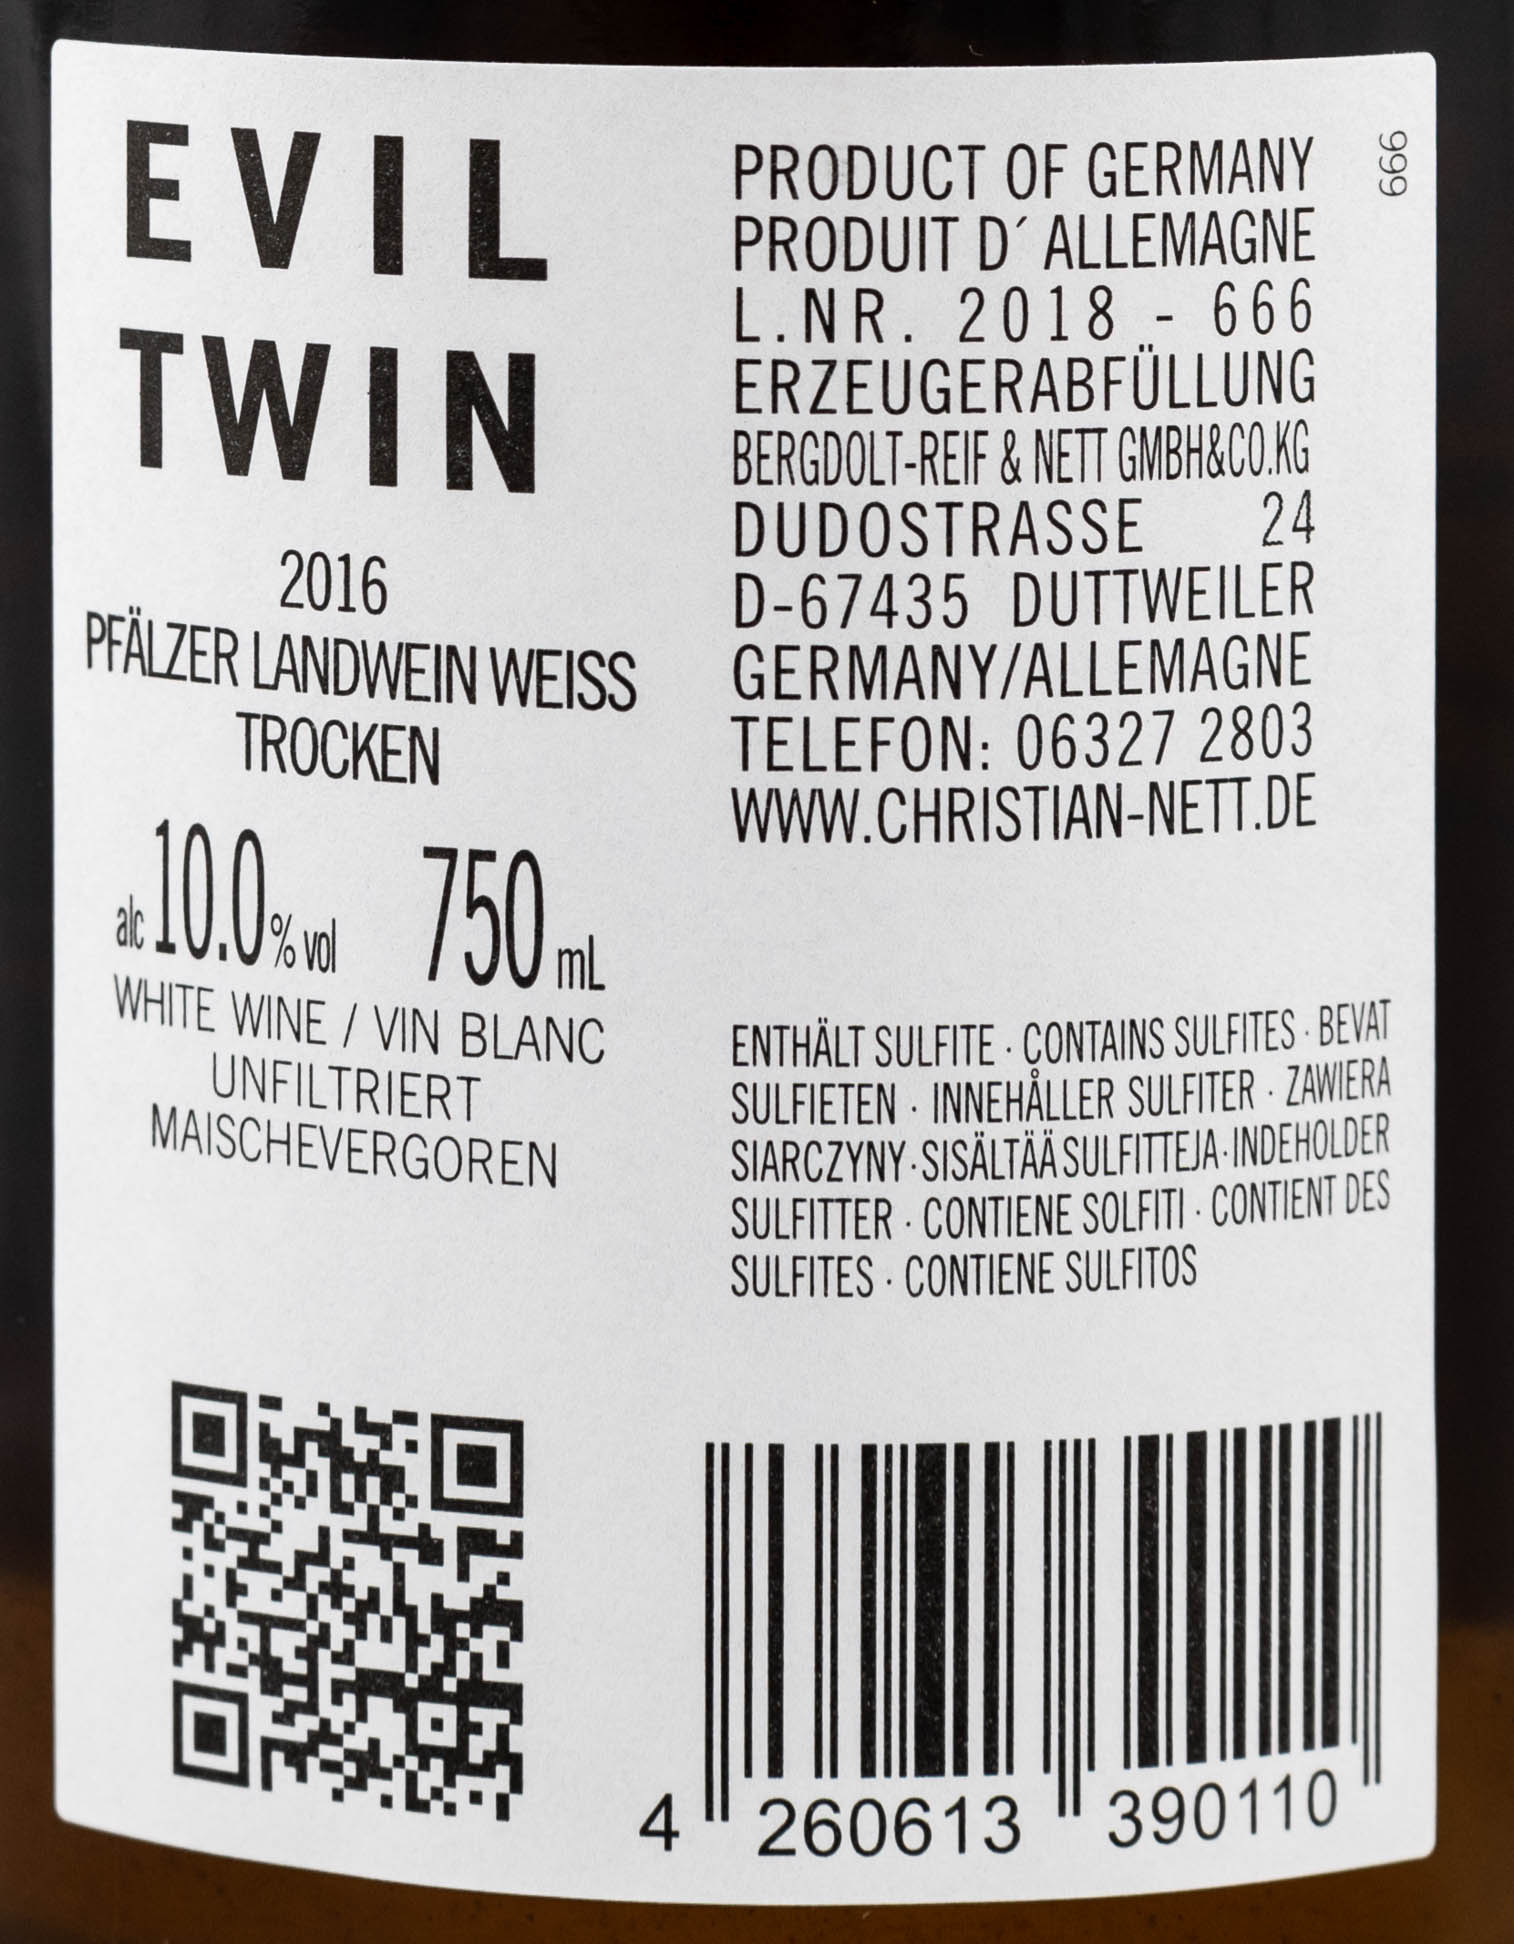 Berdoldt-Reif & Nett Orange Wine Orangewine Wein Evil Twin Muskateller zwei Gesichter Swagwine